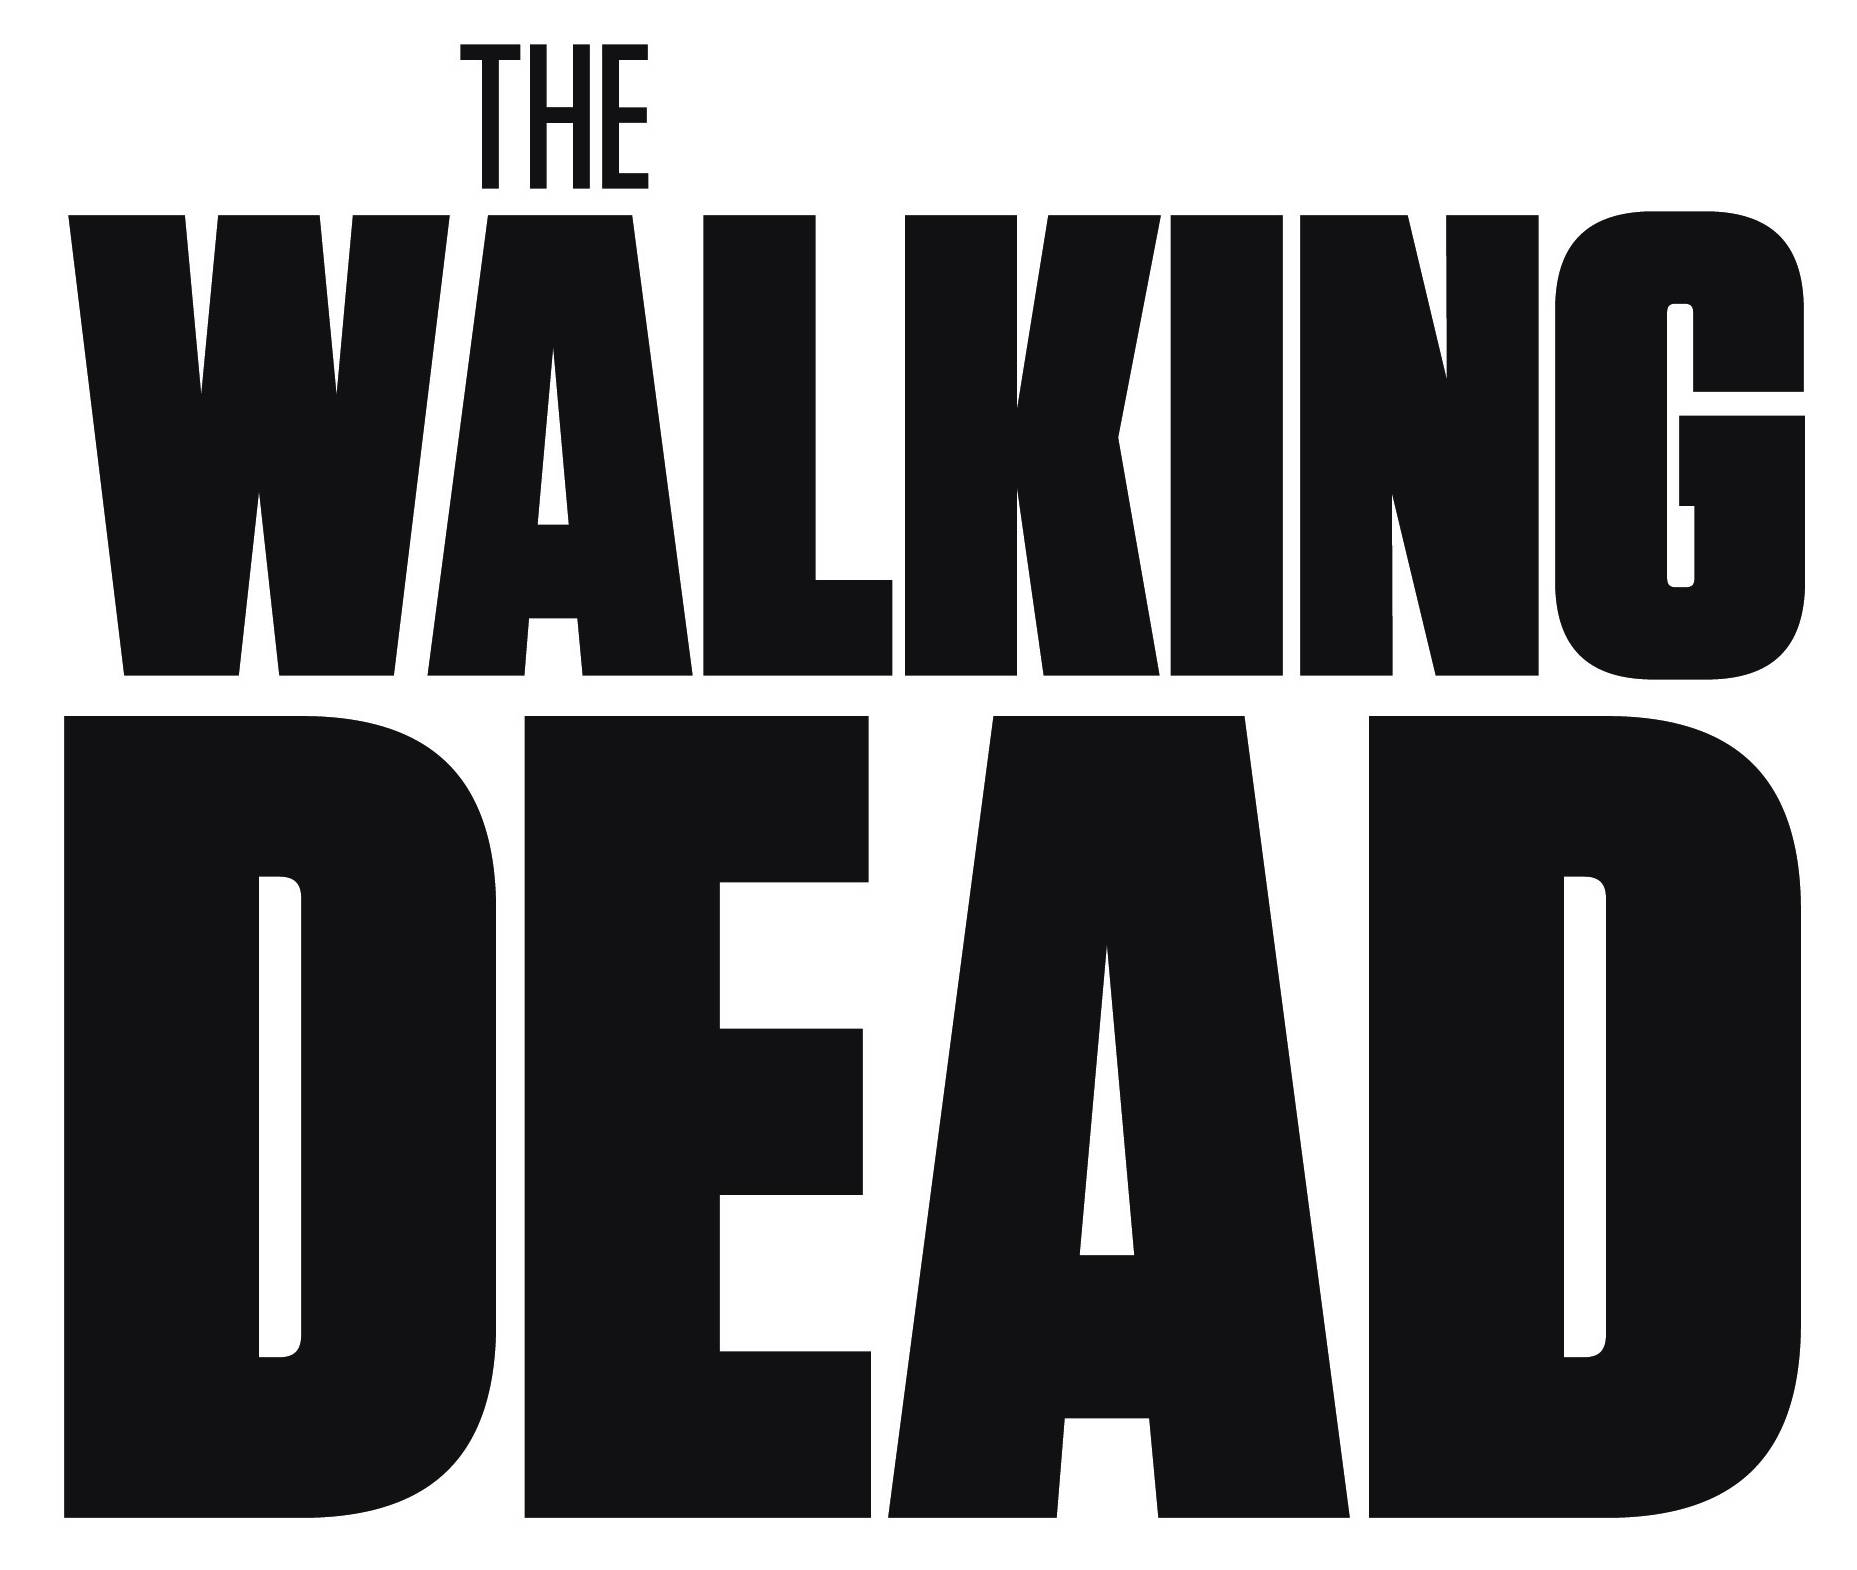 TWD Logo - The walking dead Logos